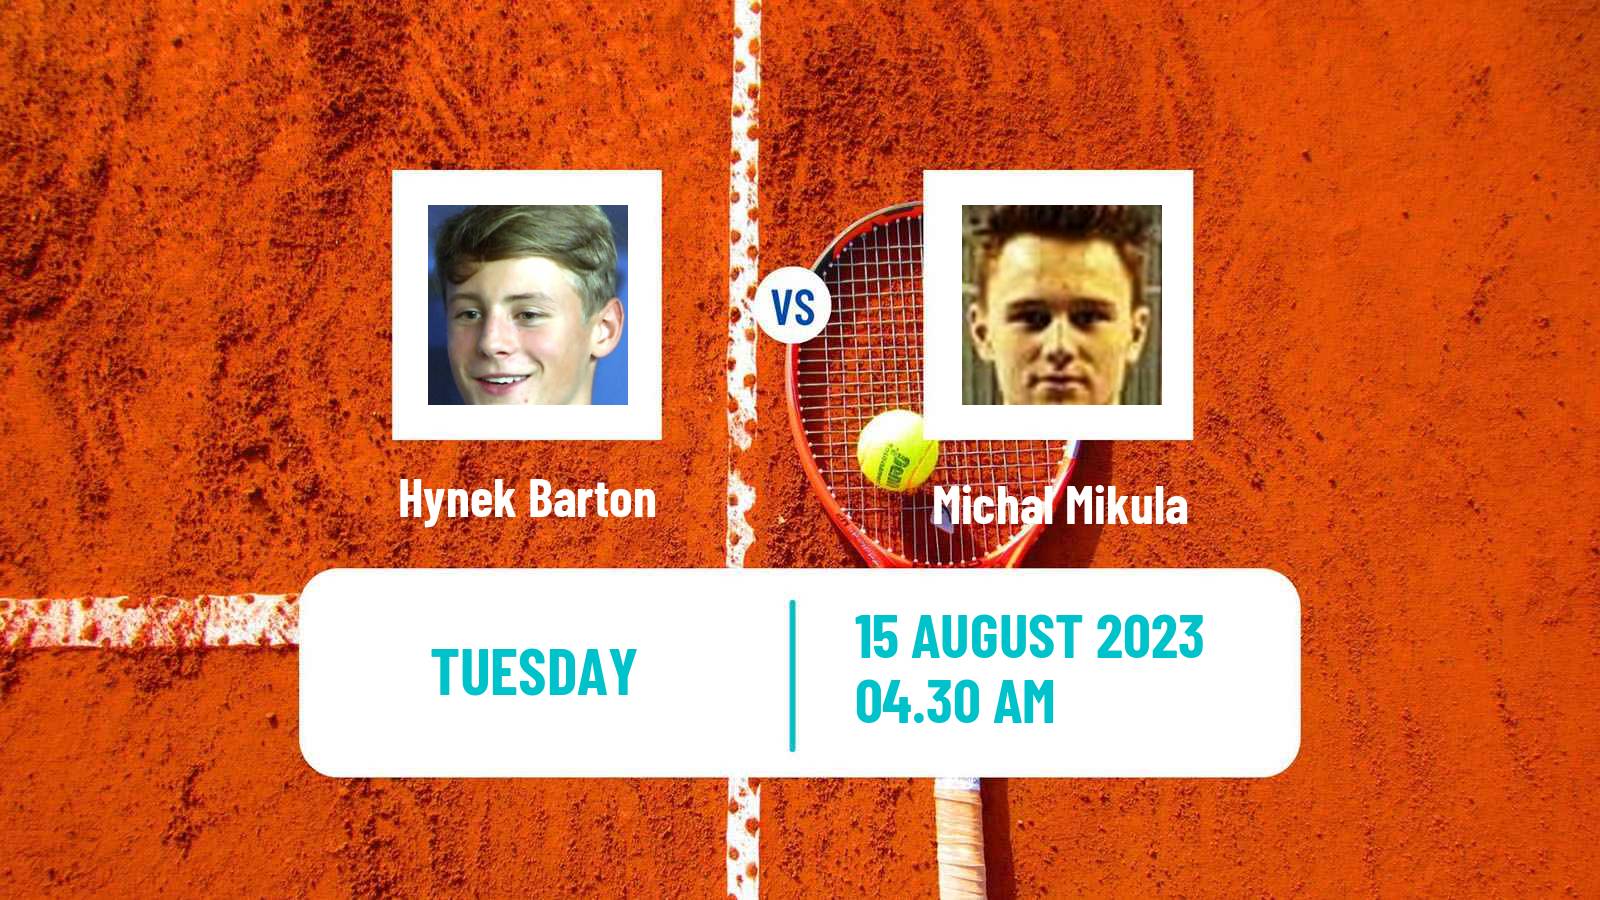 Tennis ITF M25 Bielsko Biala Men Hynek Barton - Michal Mikula